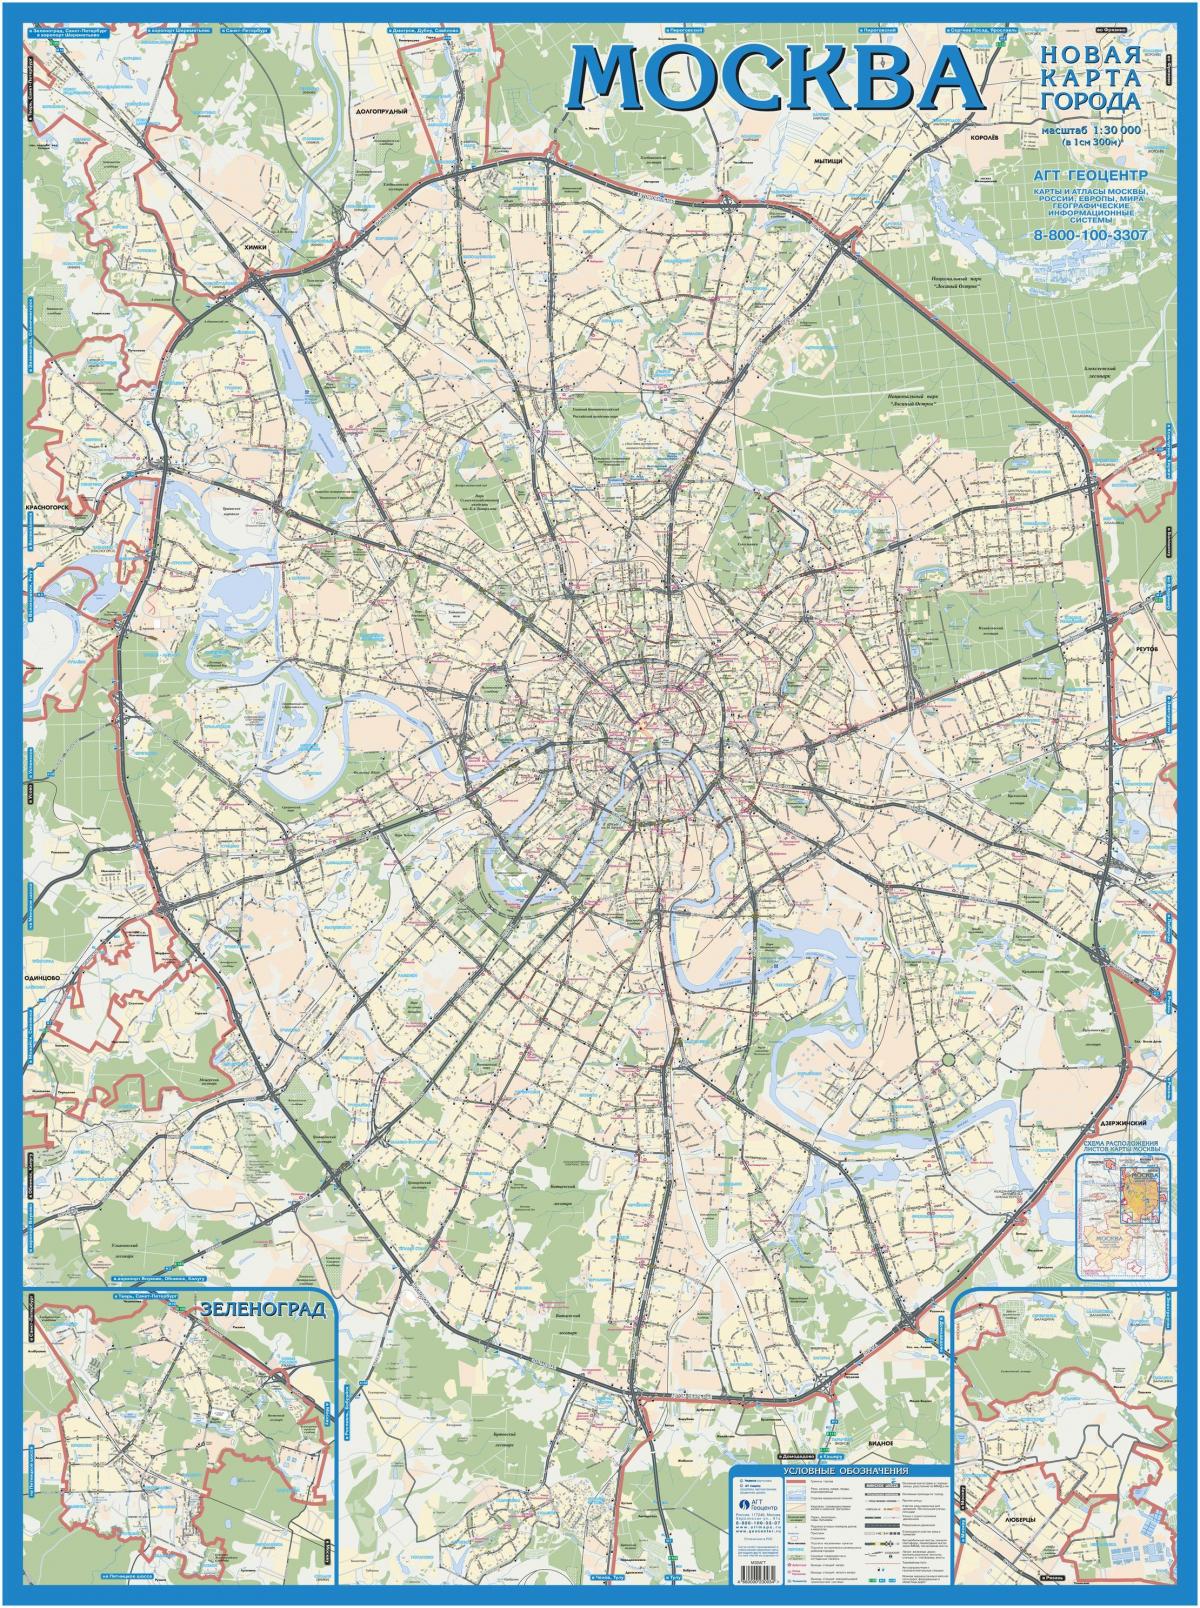 מוסקבה גיאוגרפי מפה